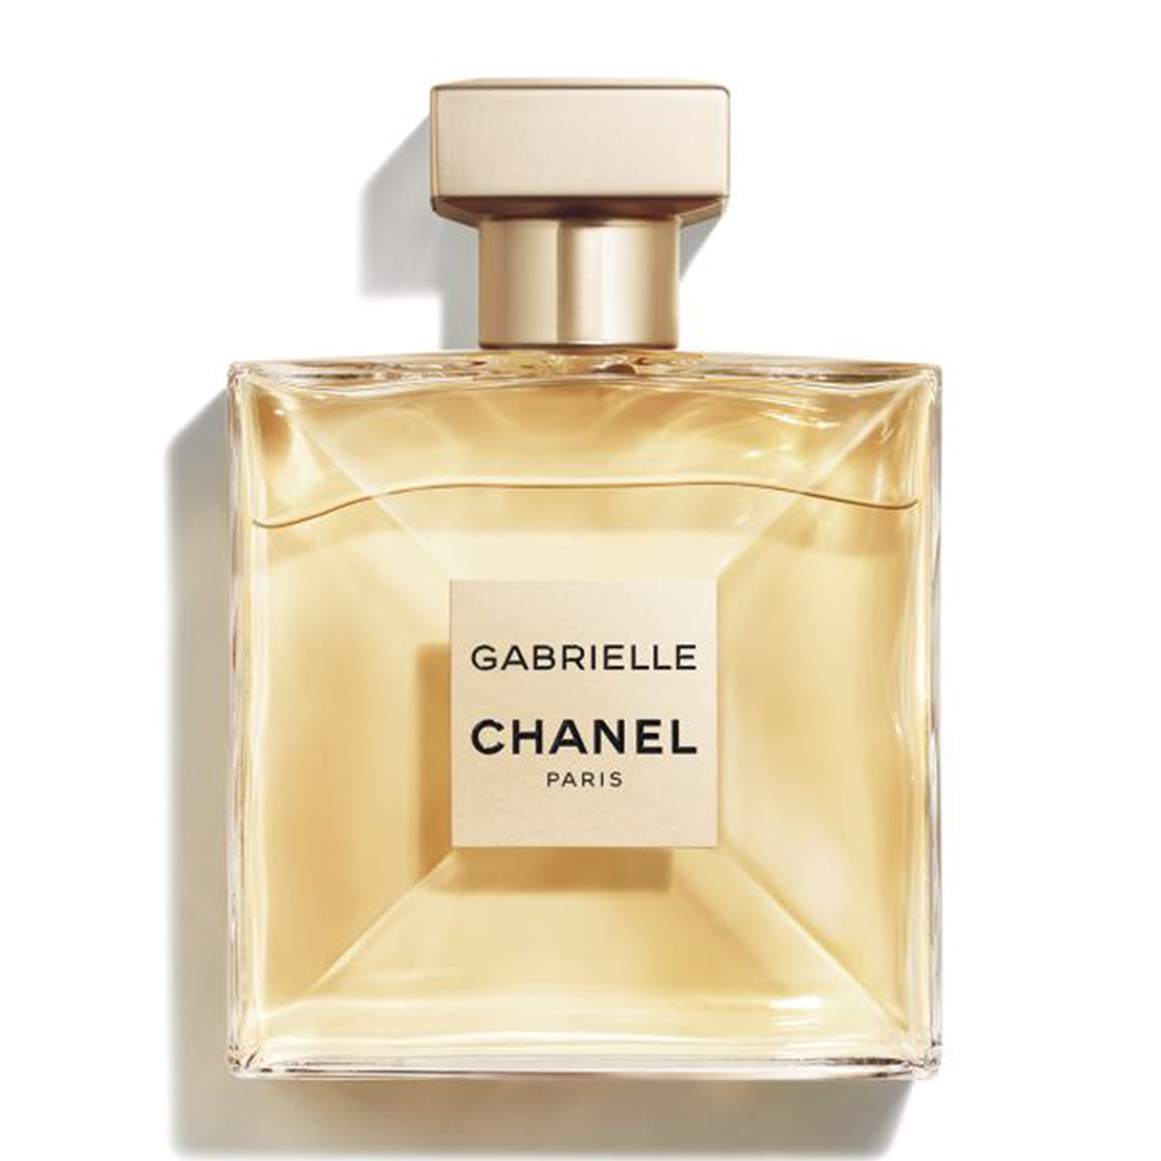 CHANEL GABRIELLE CHANEL Eau De Parfum